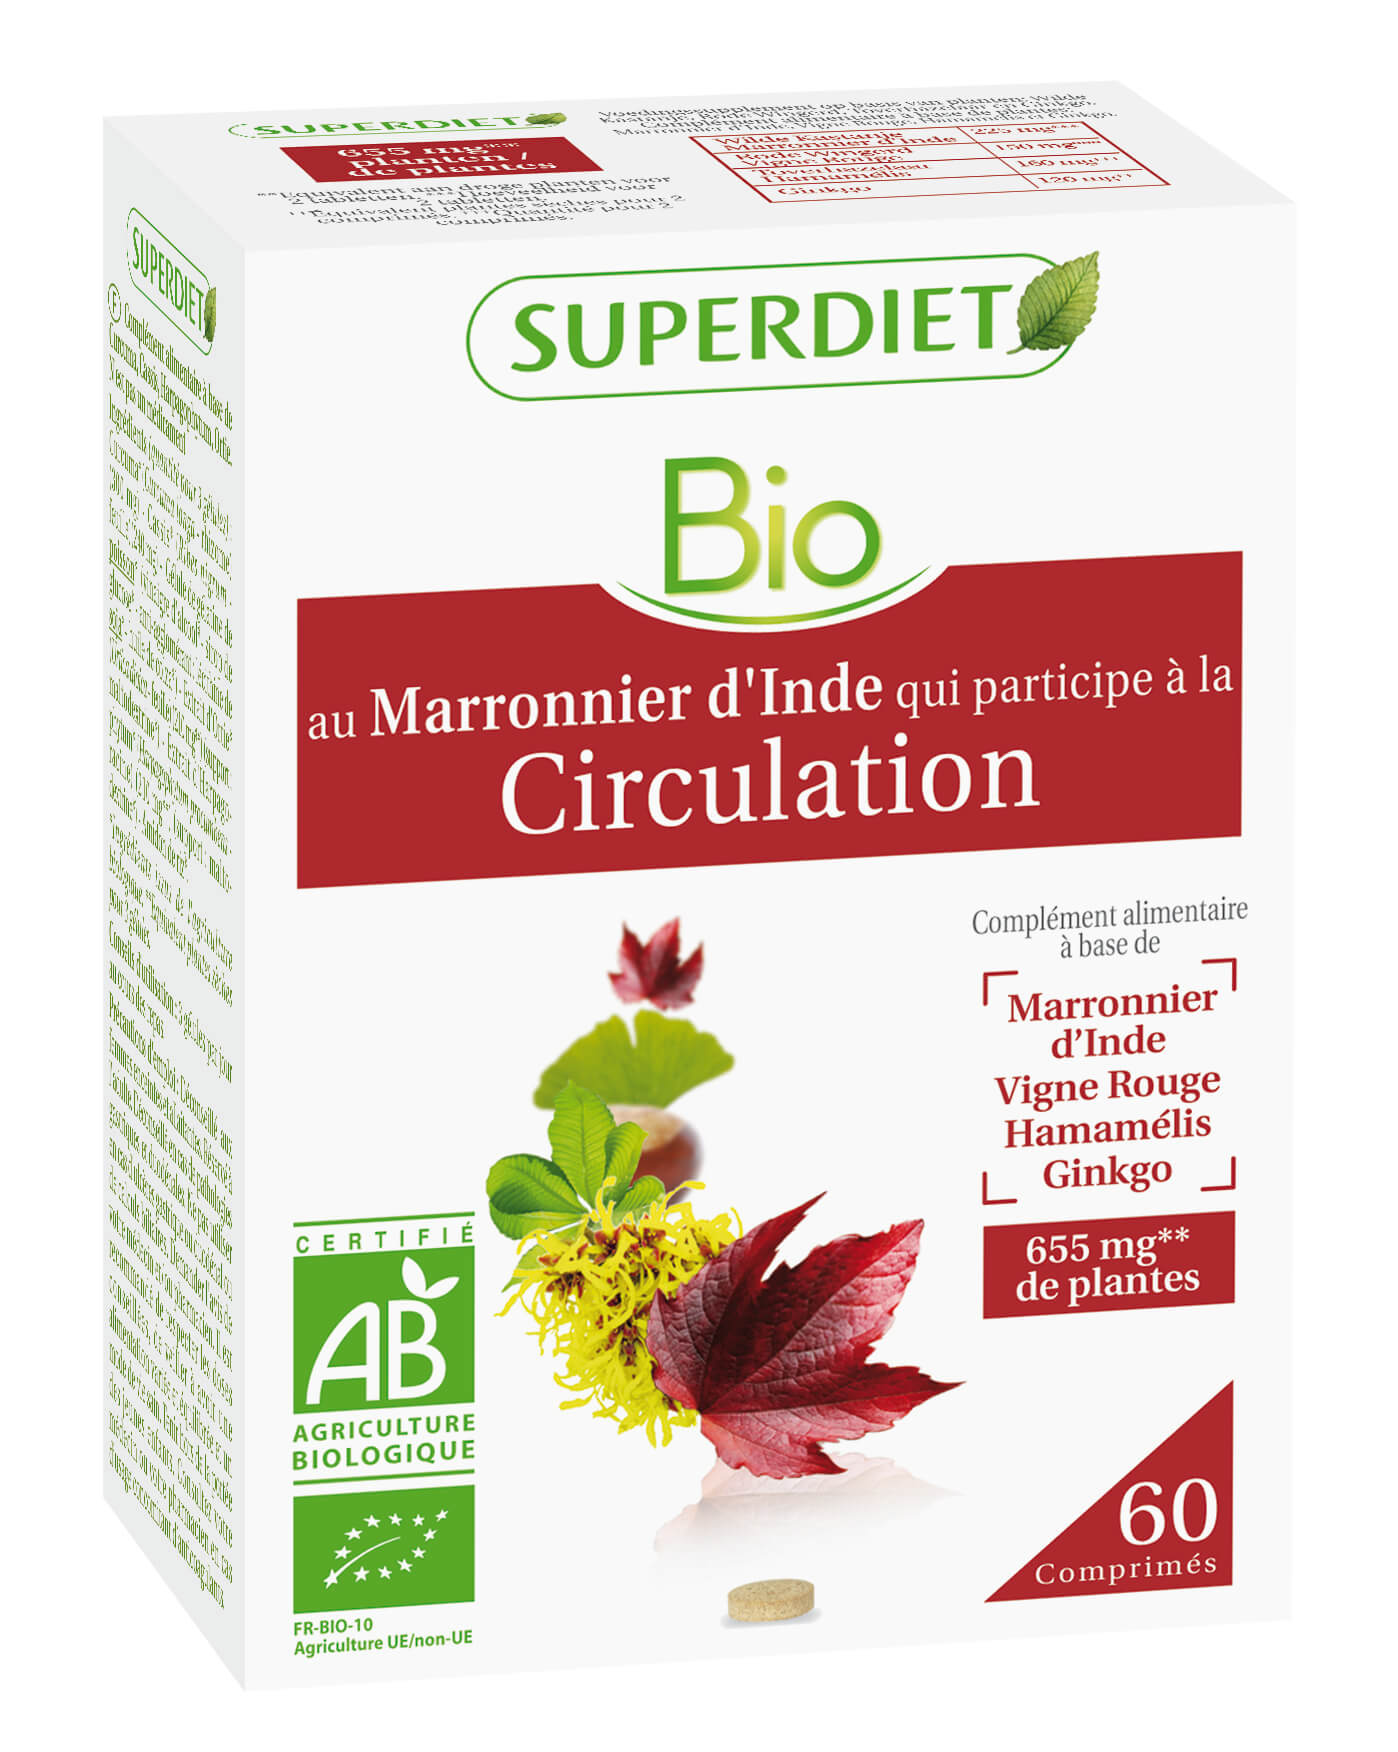 Super Diet Complexe marronnier d'inde circulation bio 60comprimés PL 483/331